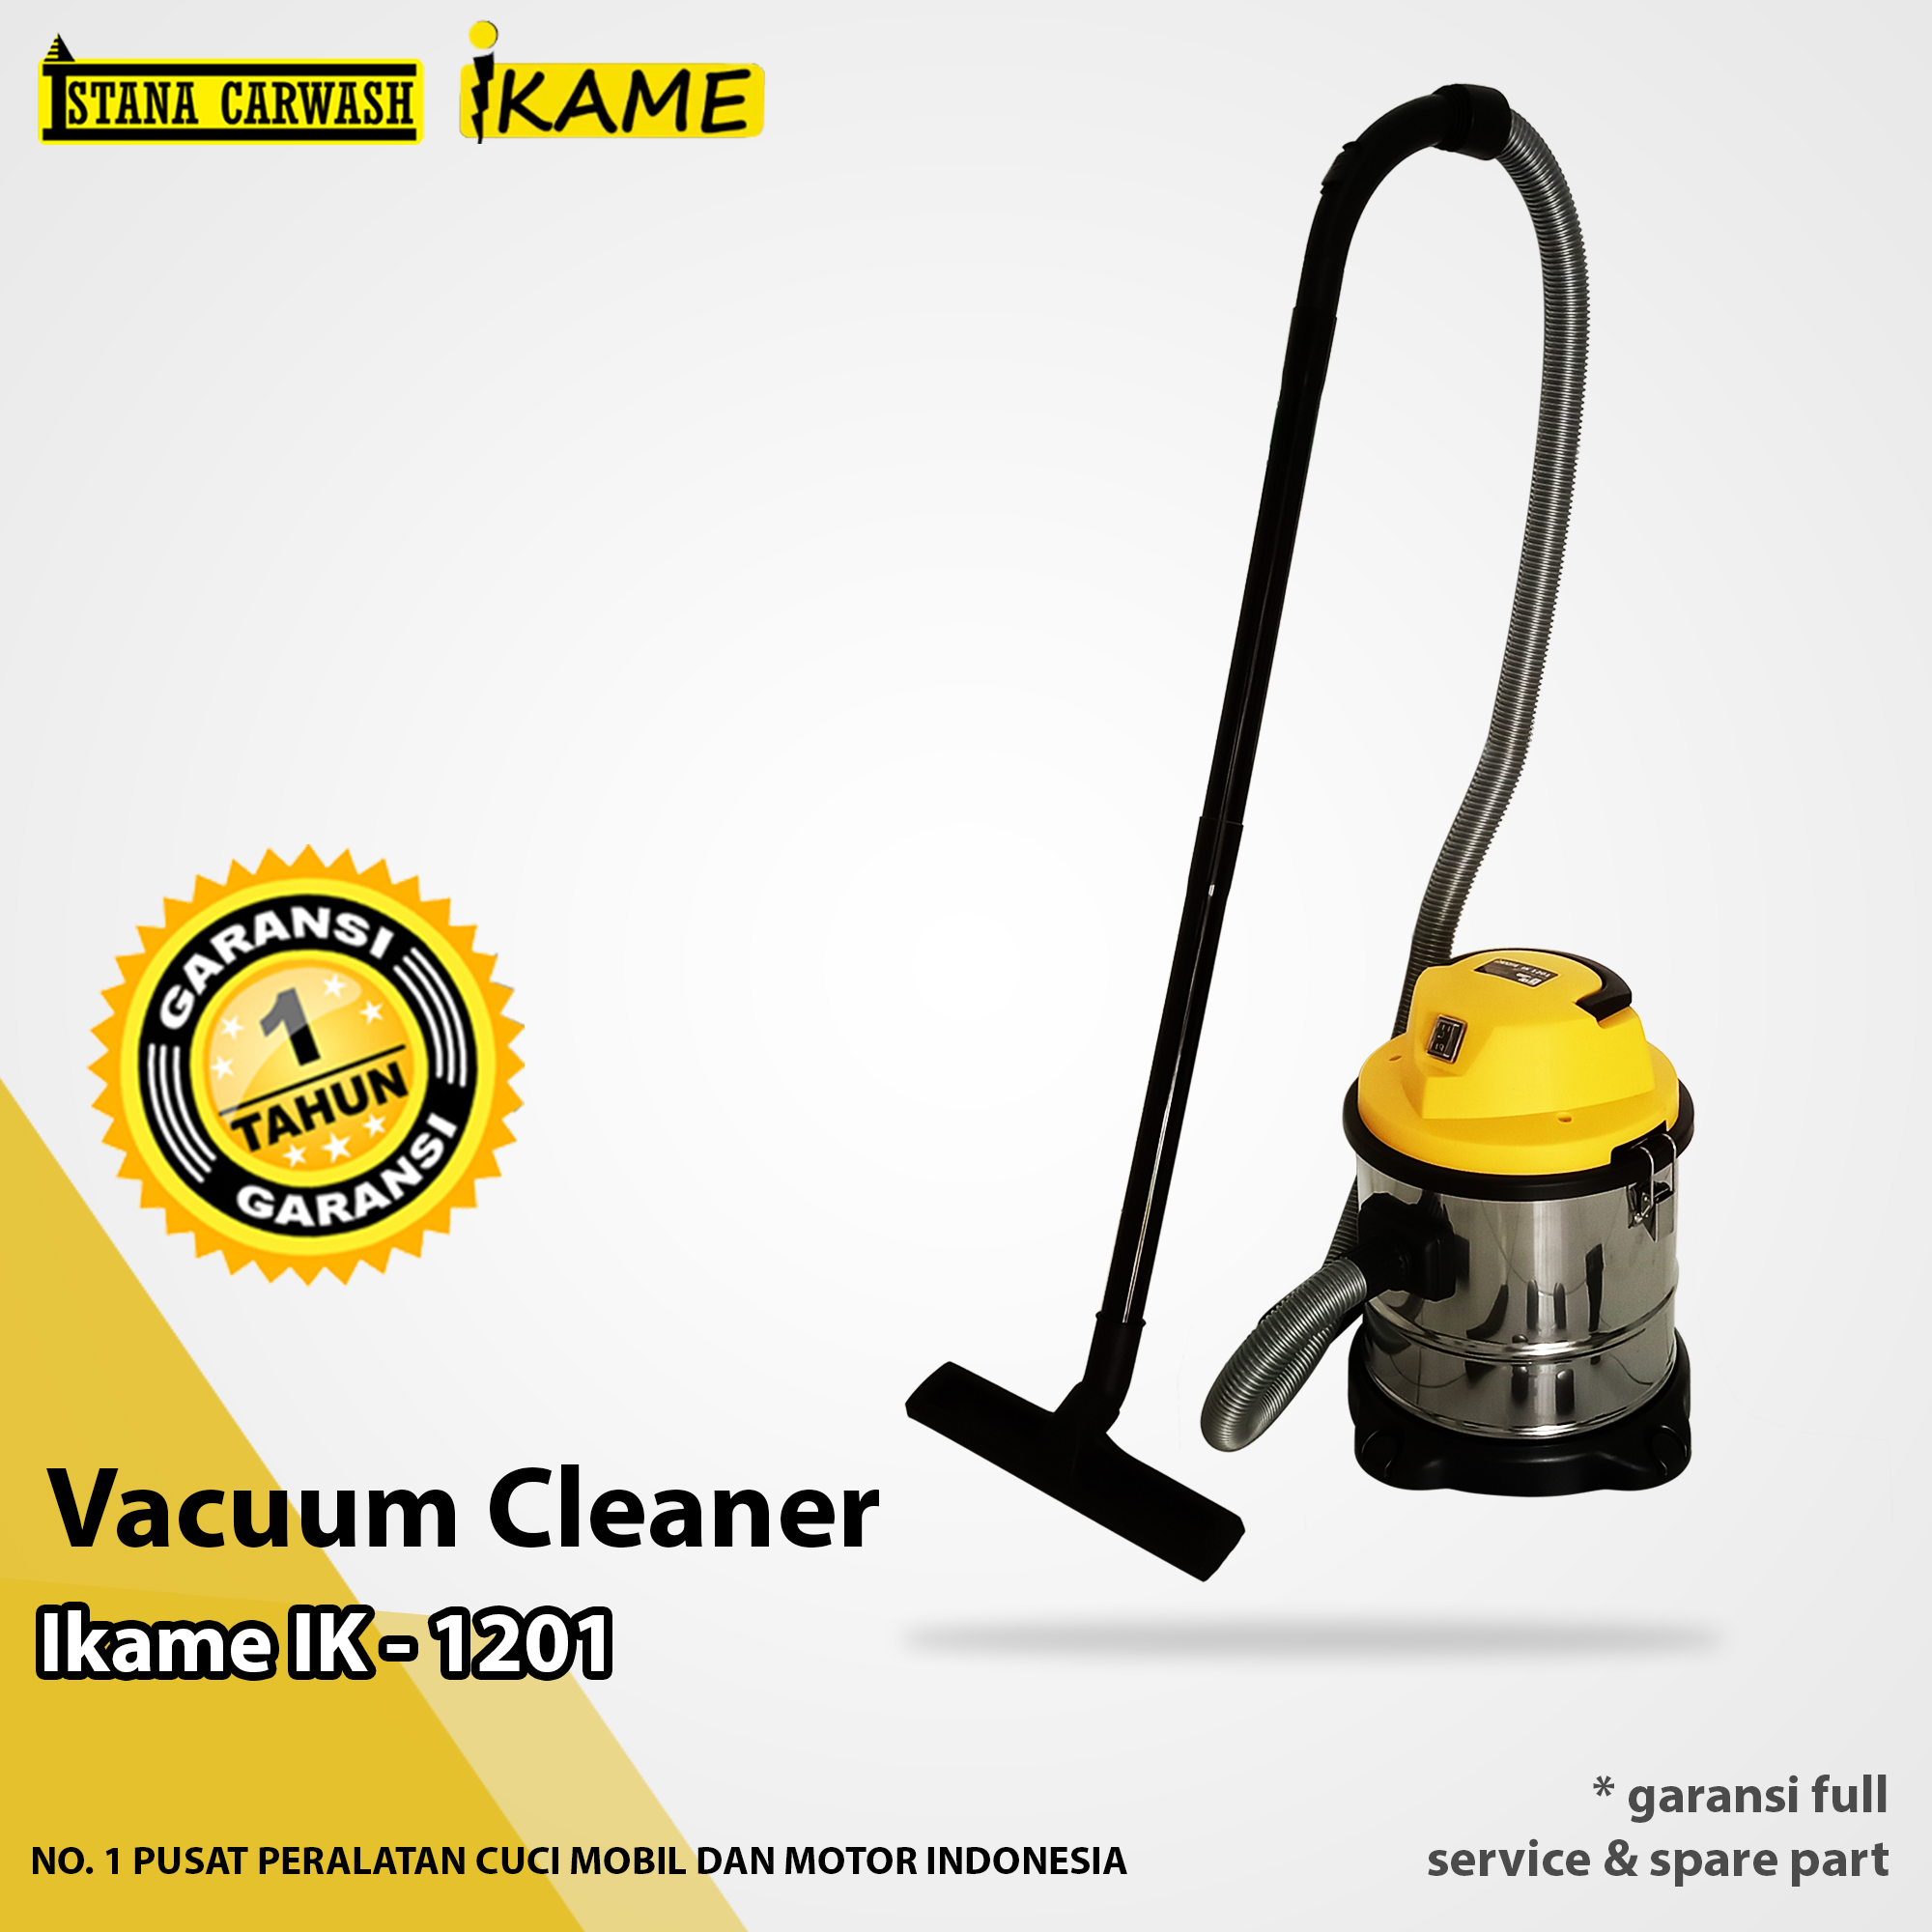 Vacuum Cleaner Ikame IK 1201